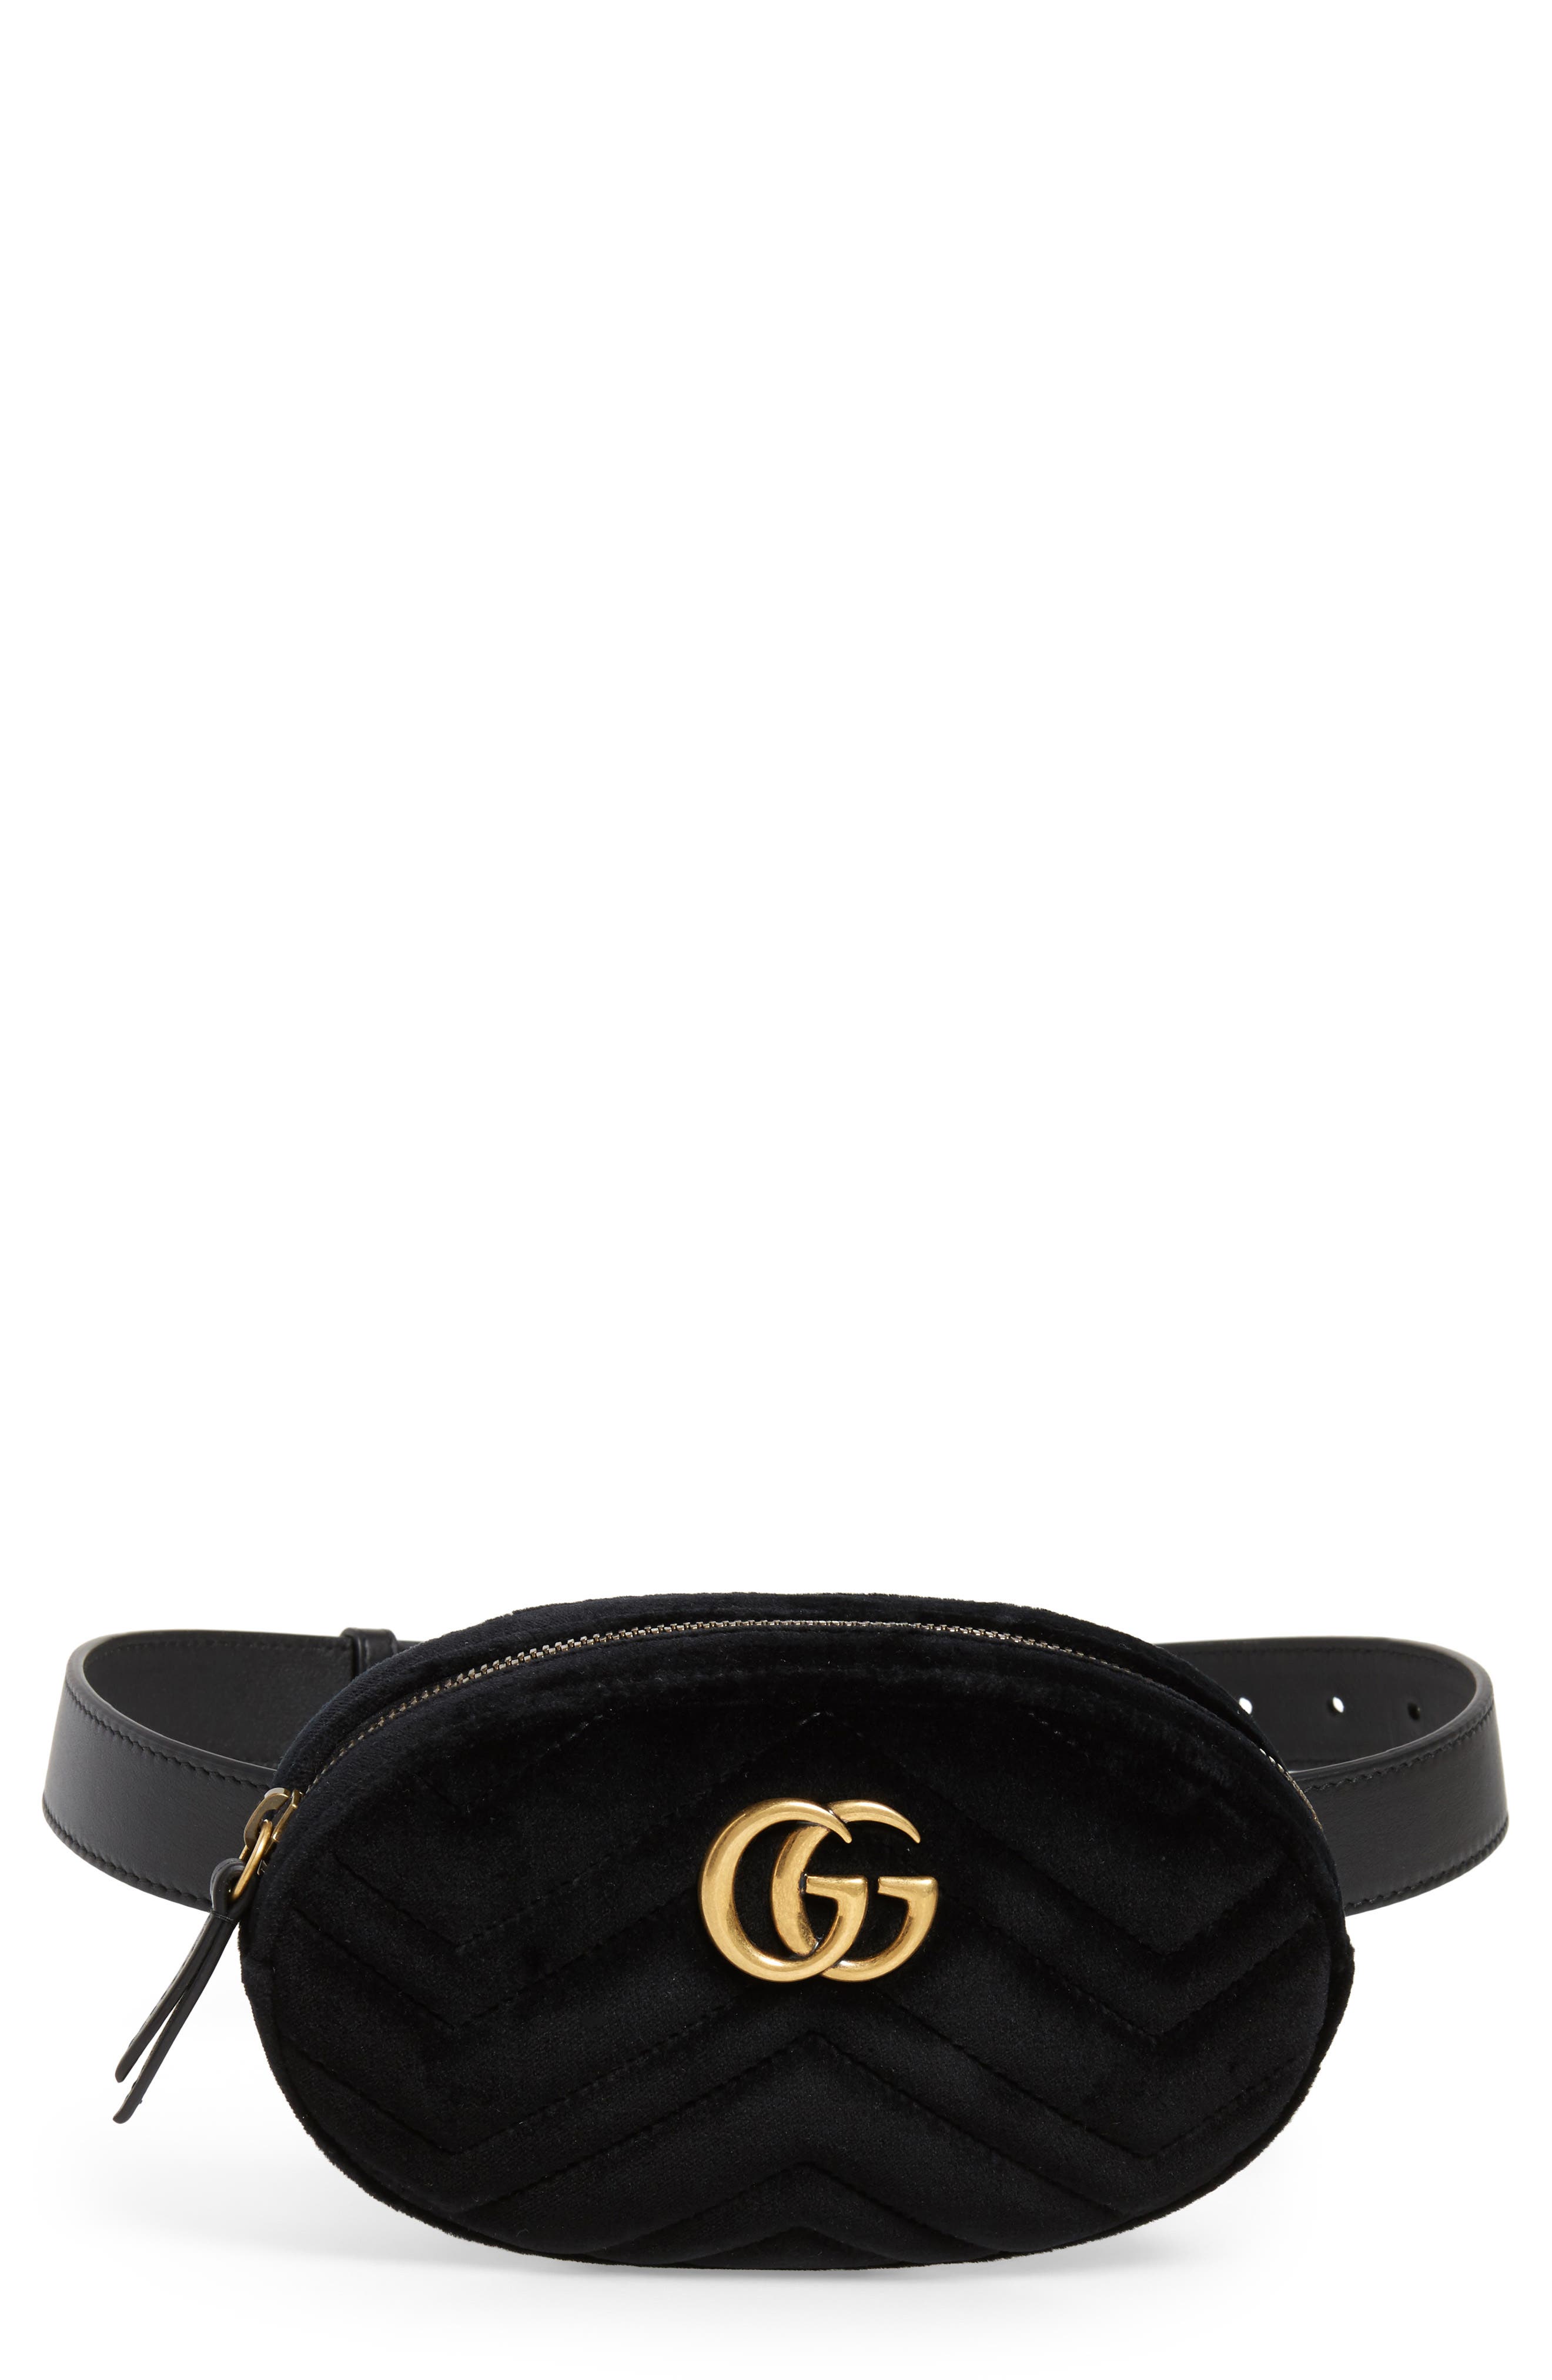 gucci belt purse